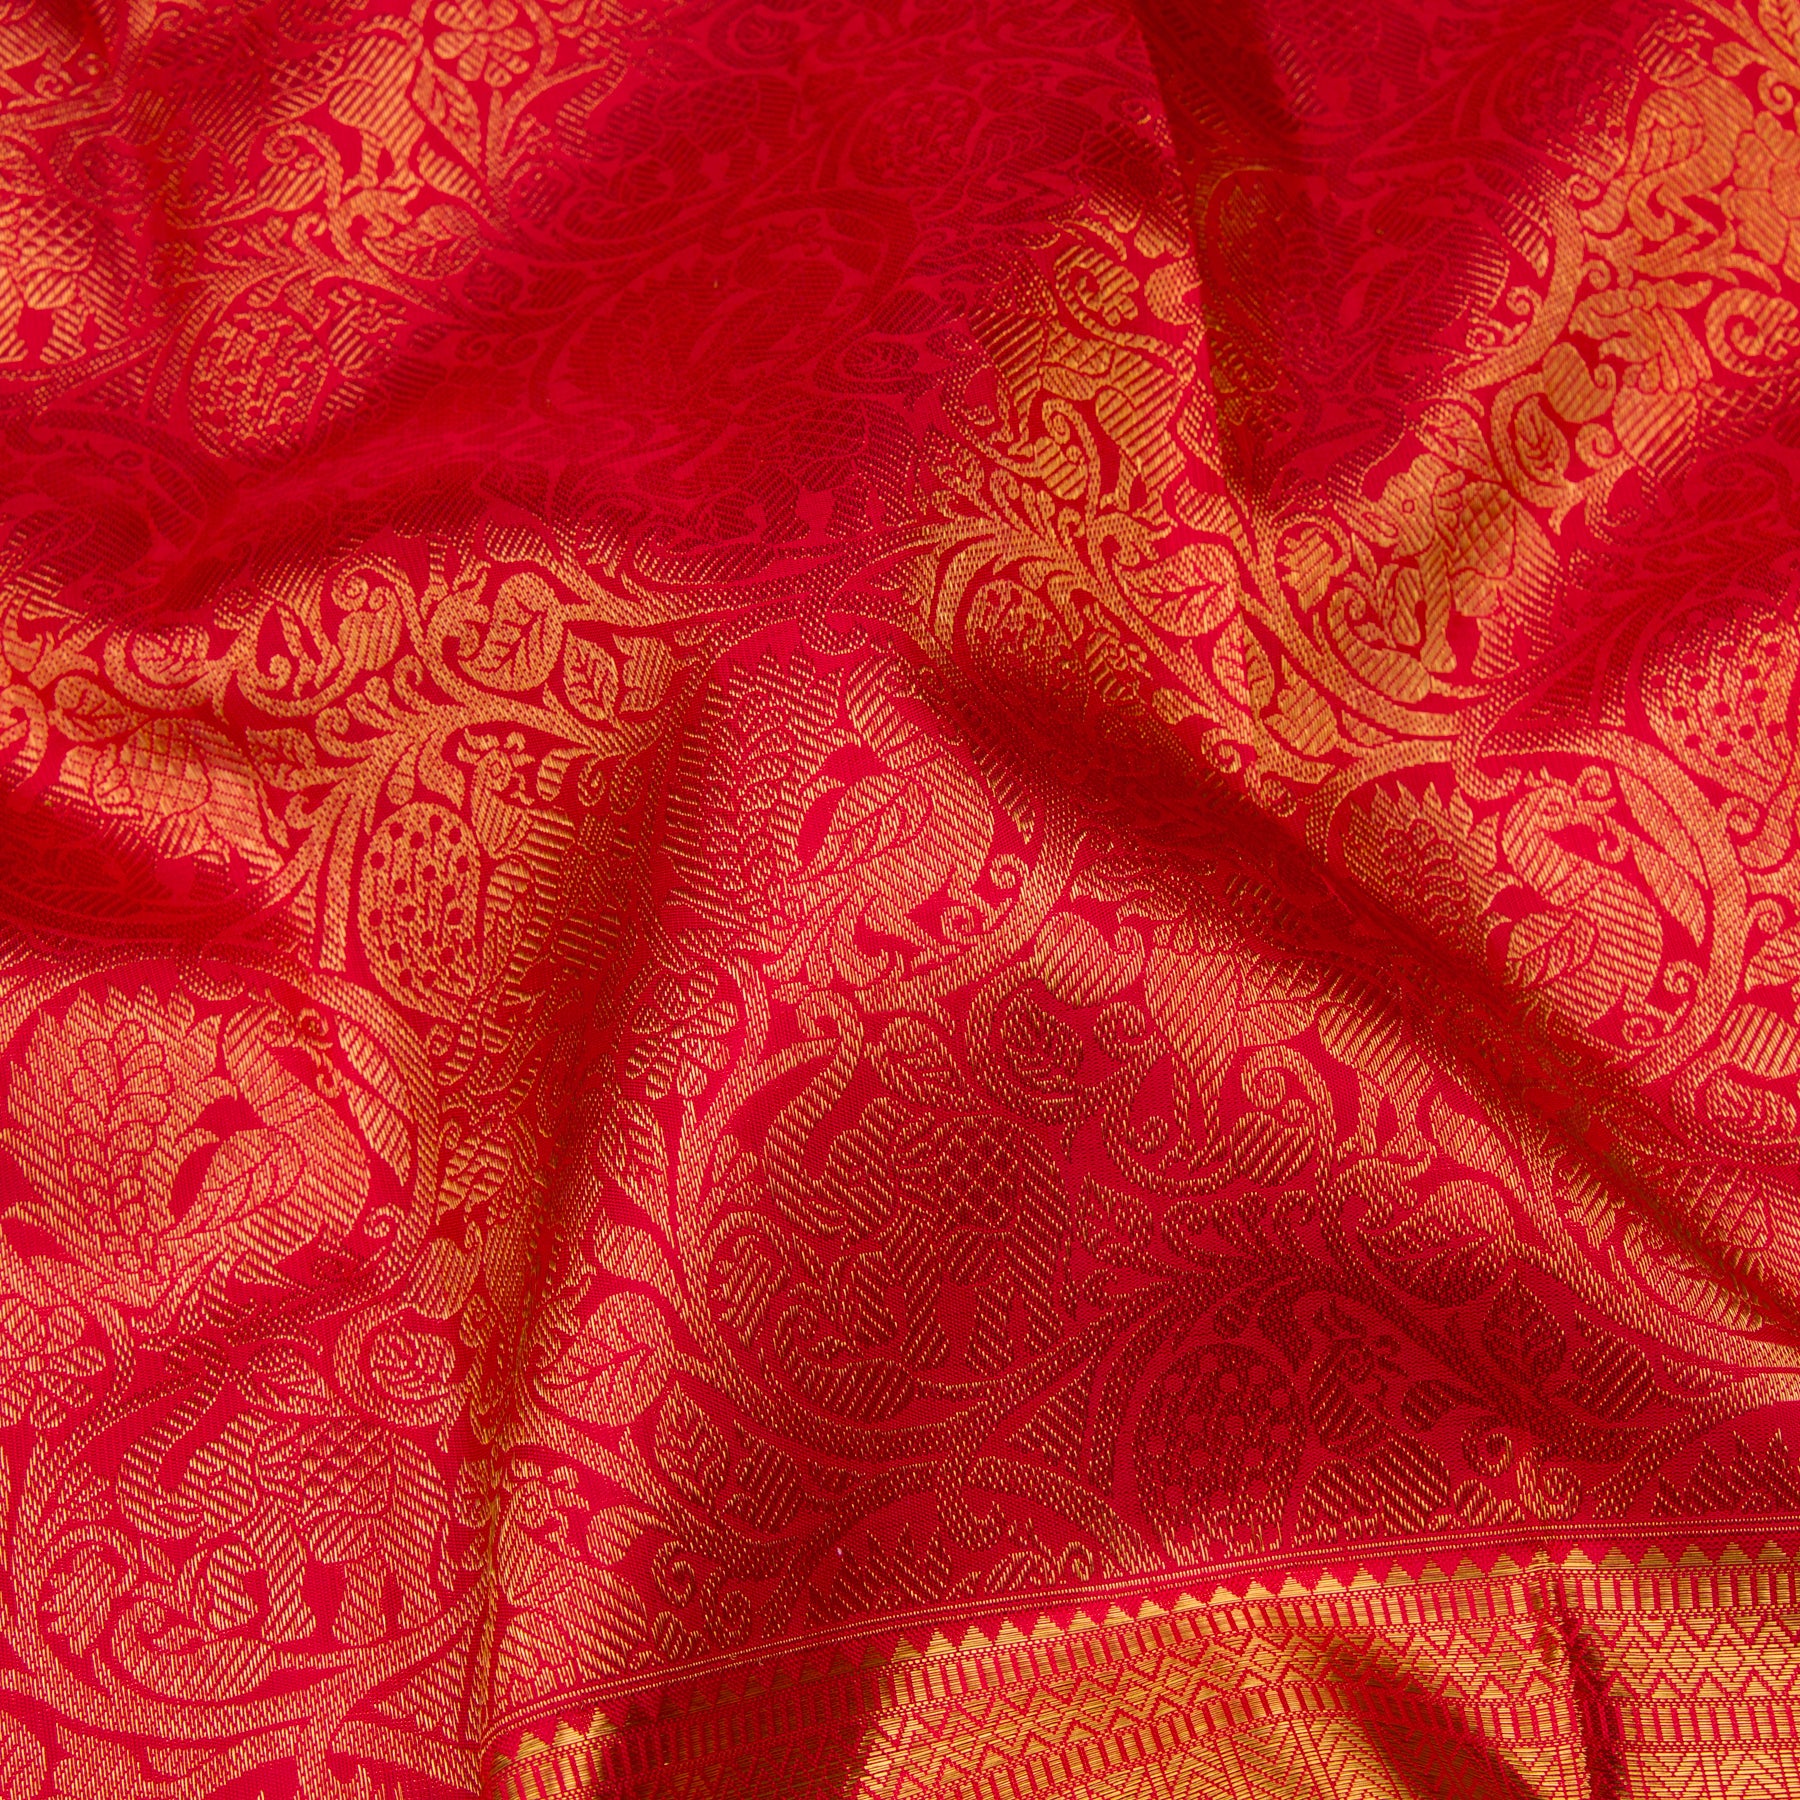 Kanakavalli Kanjivaram Silk Sari 23-110-HS001-11757 - Fabric View